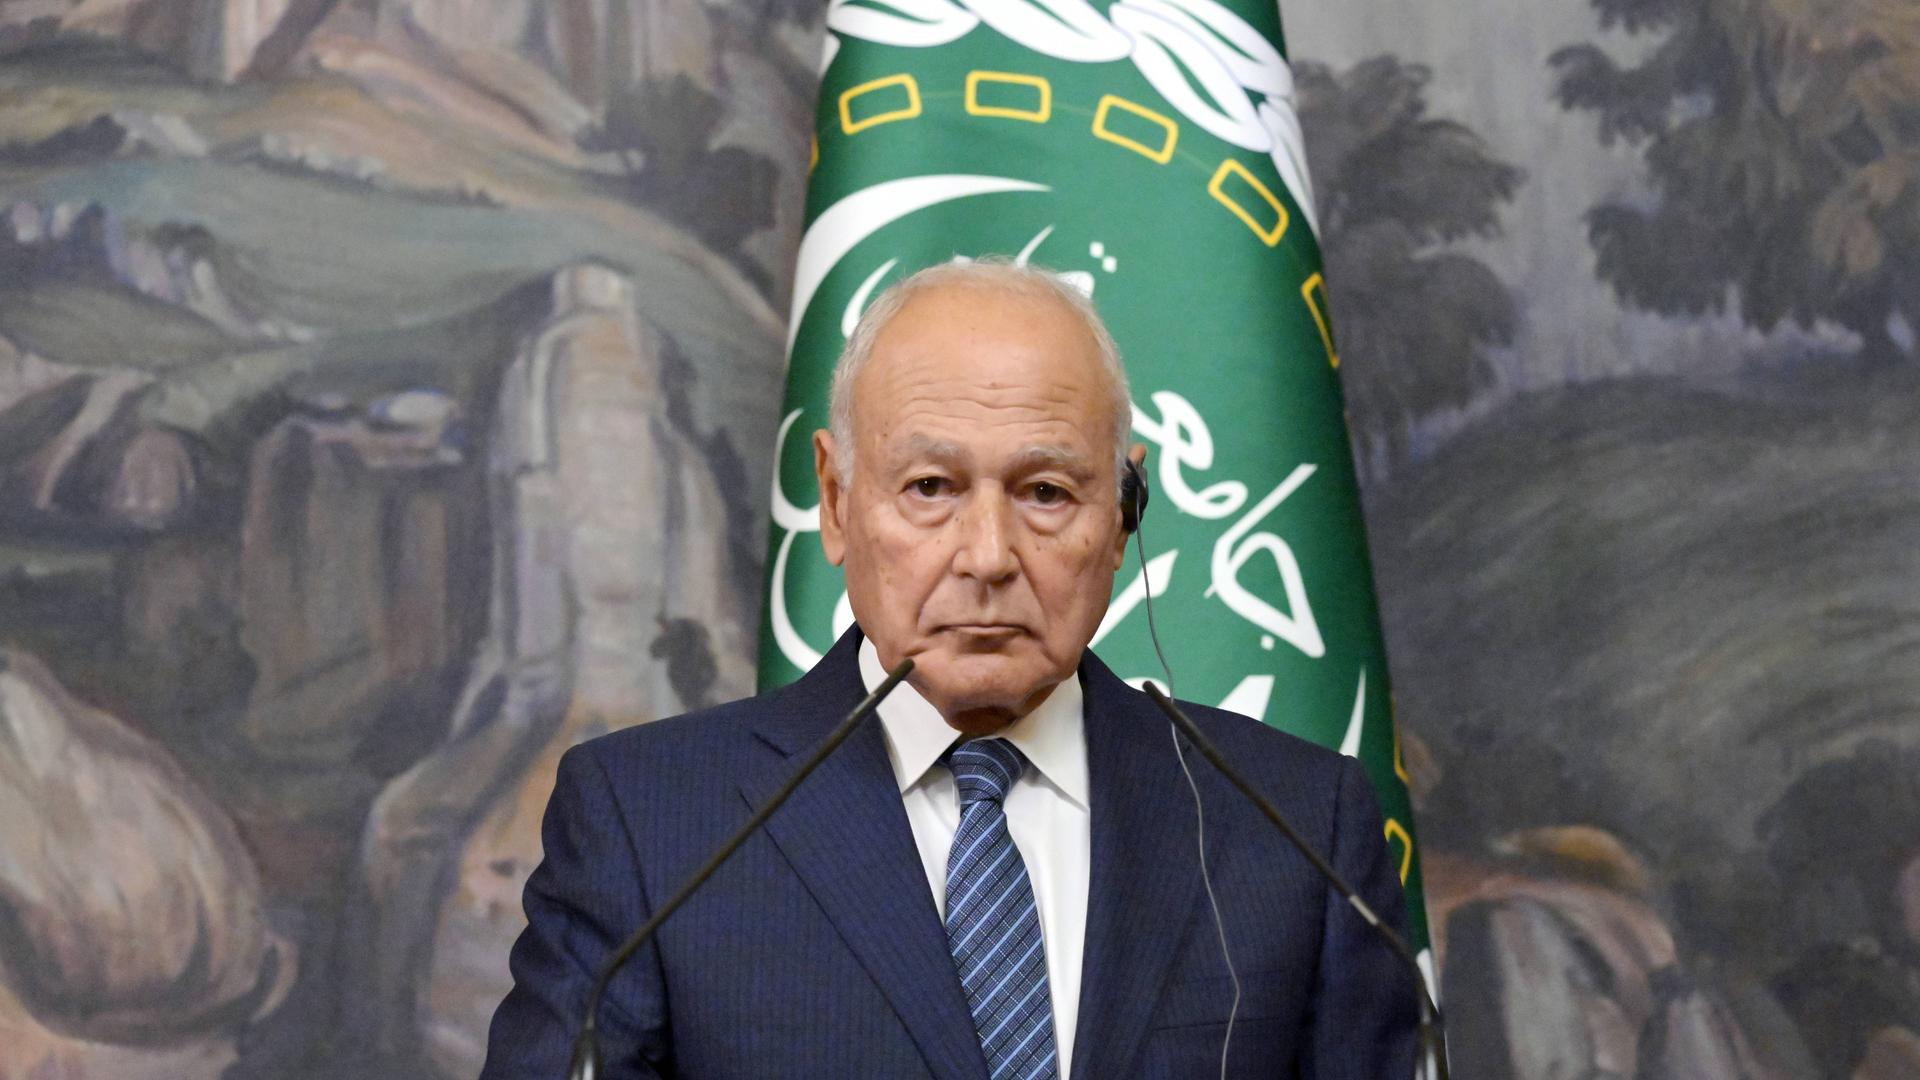 Der Generalsekretär der Arabischen Liga, Ahmed Abul Gheit, steht während einer Pressekonferenz an einem Mikrofon.